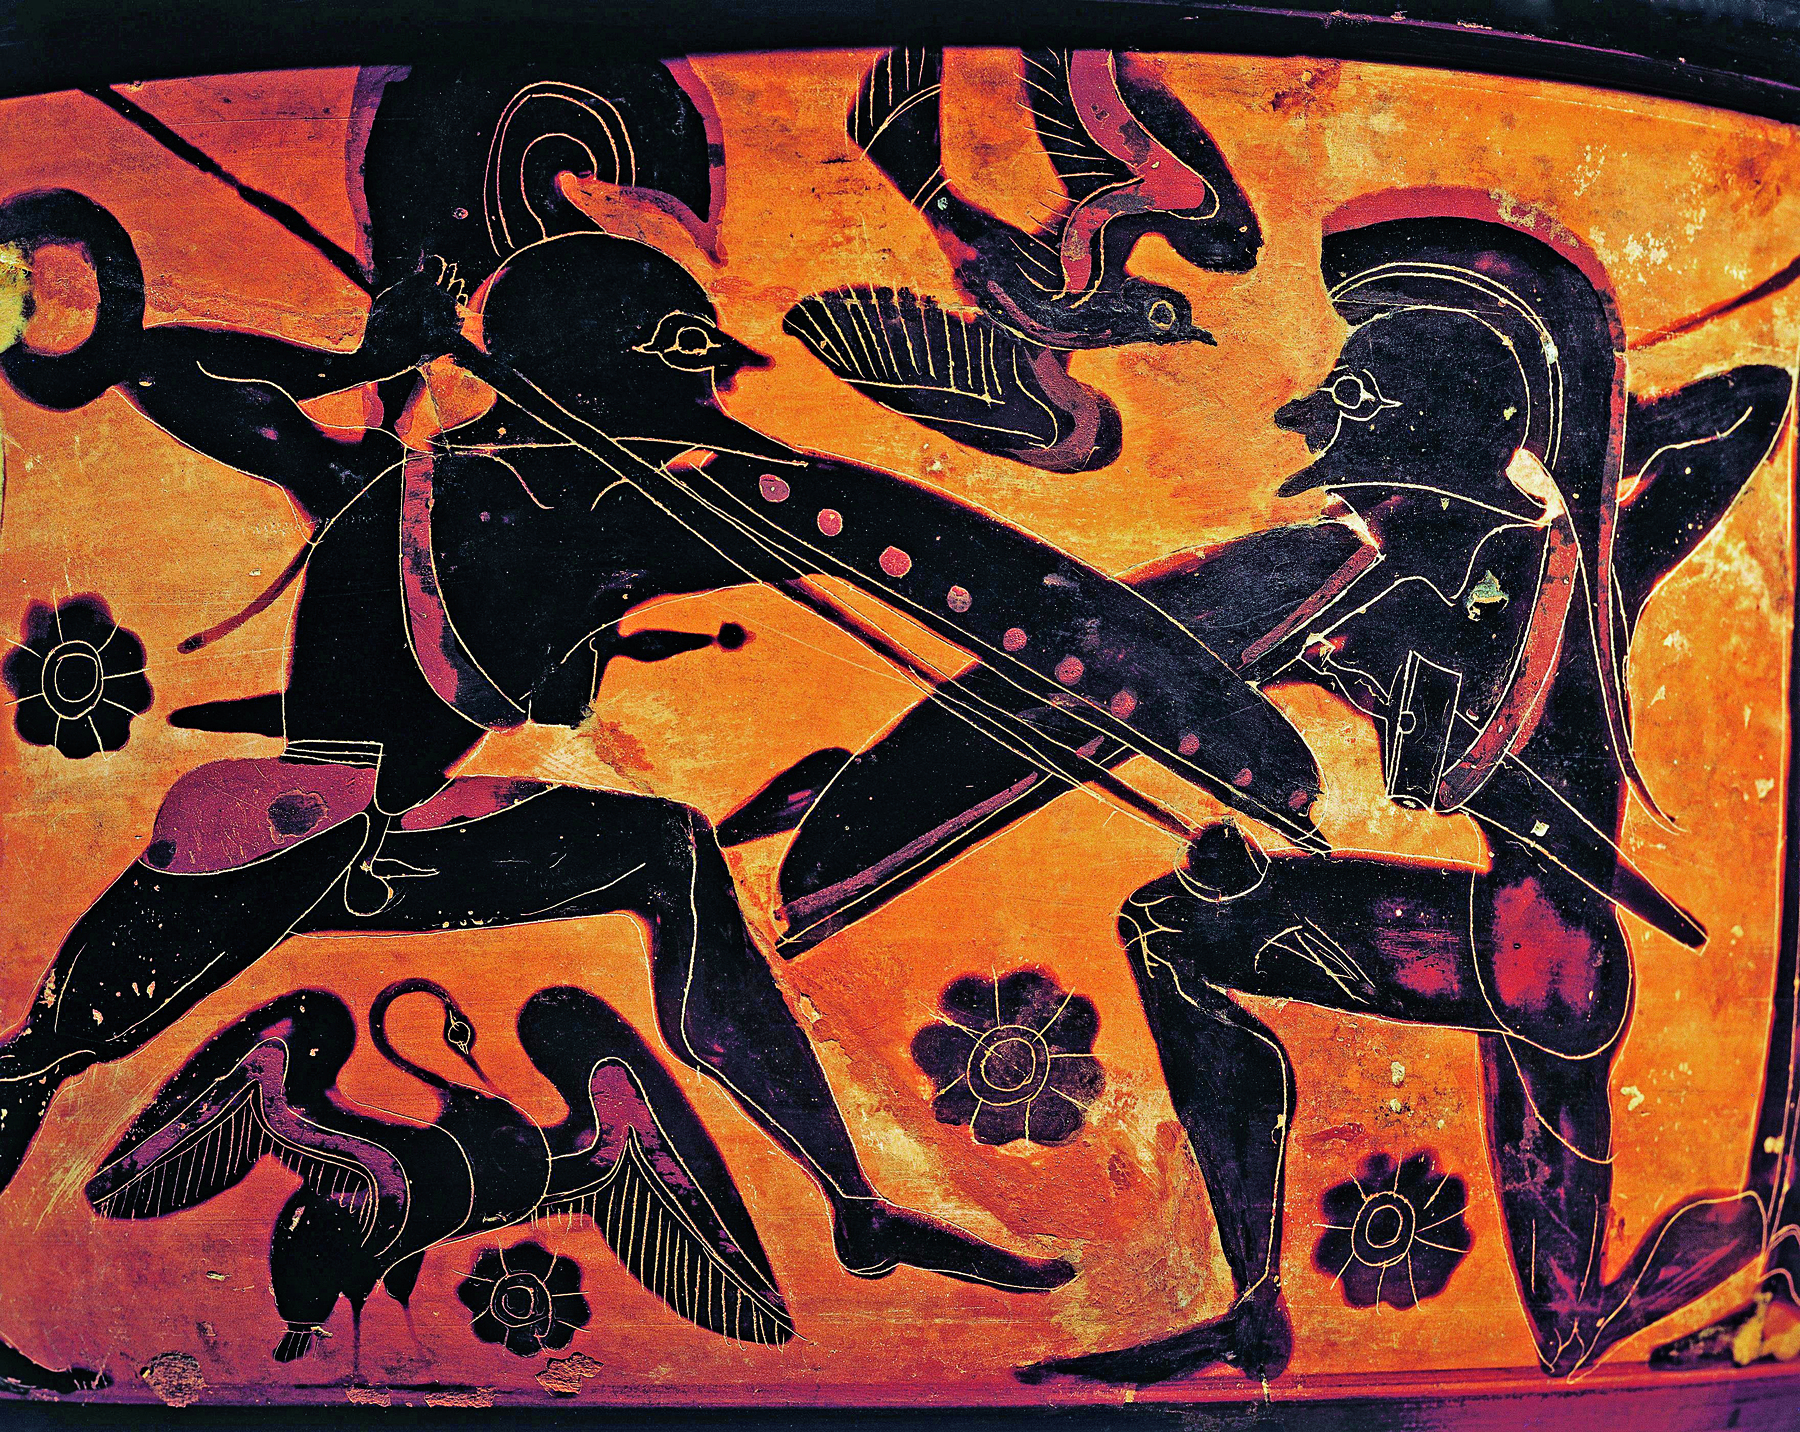 Fotografia. Destaque para a pintura de uma superfície amarela de um vaso. Dois guerreiros se enfrentando. Eles têm lanças e escudos. O guerreiro da direita está ajoelhado e o guerreiro da esquerda está com o corpo inclinado para frente, na direção de seu oponente.